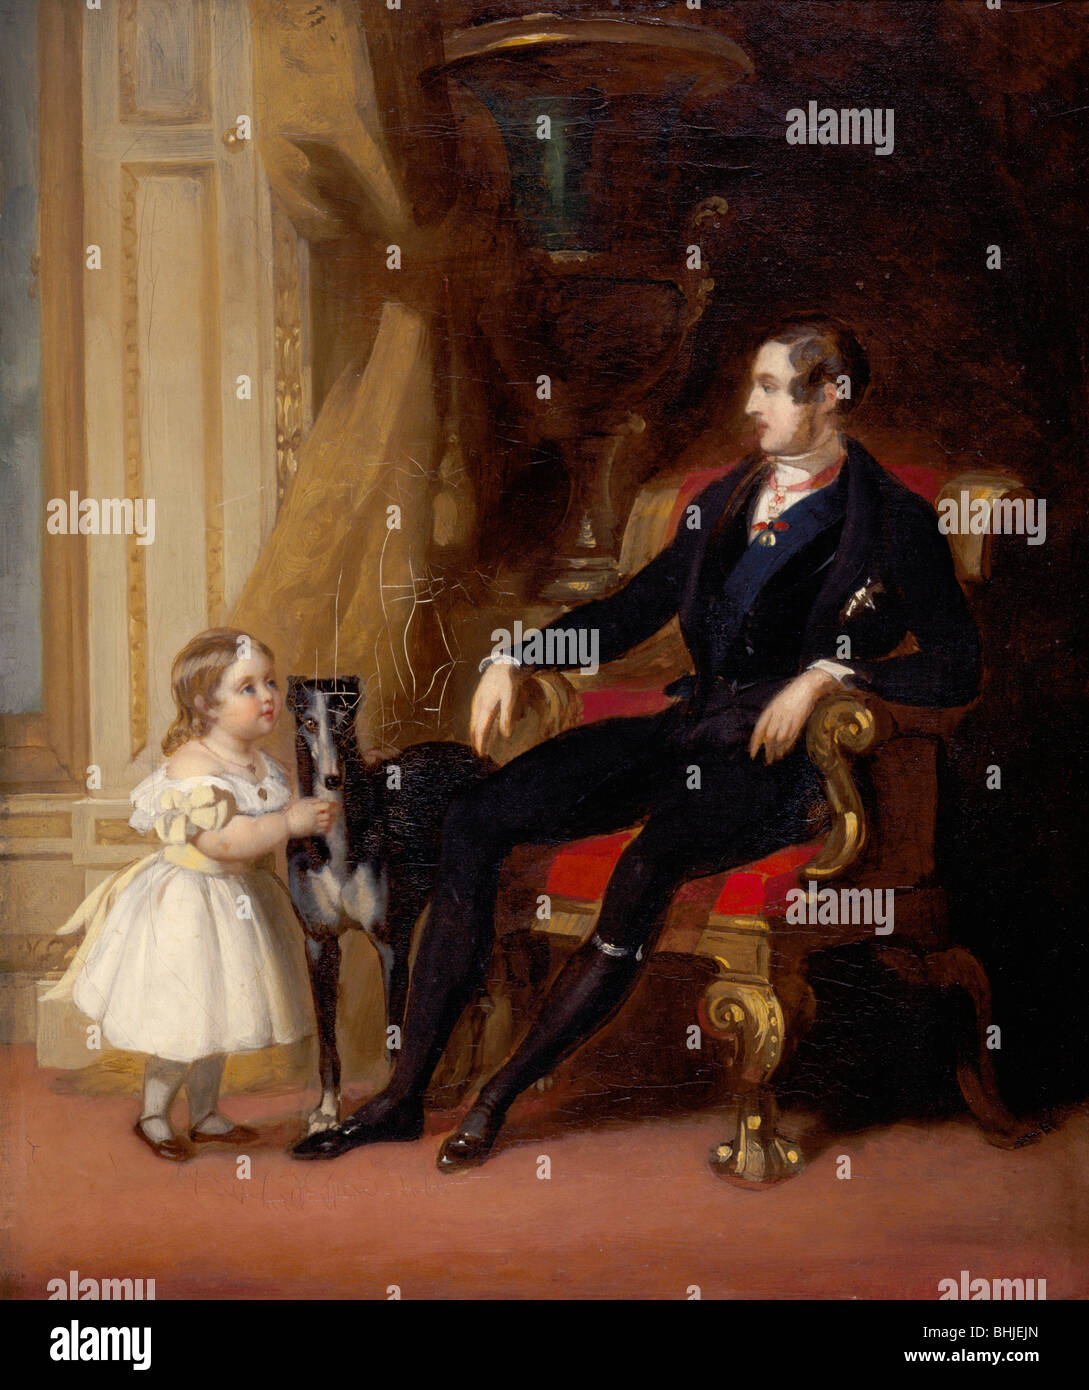 Albert Principe Consorte con la Principessa Victoria e Eos, c1843. Artista: G Lucas Foto Stock